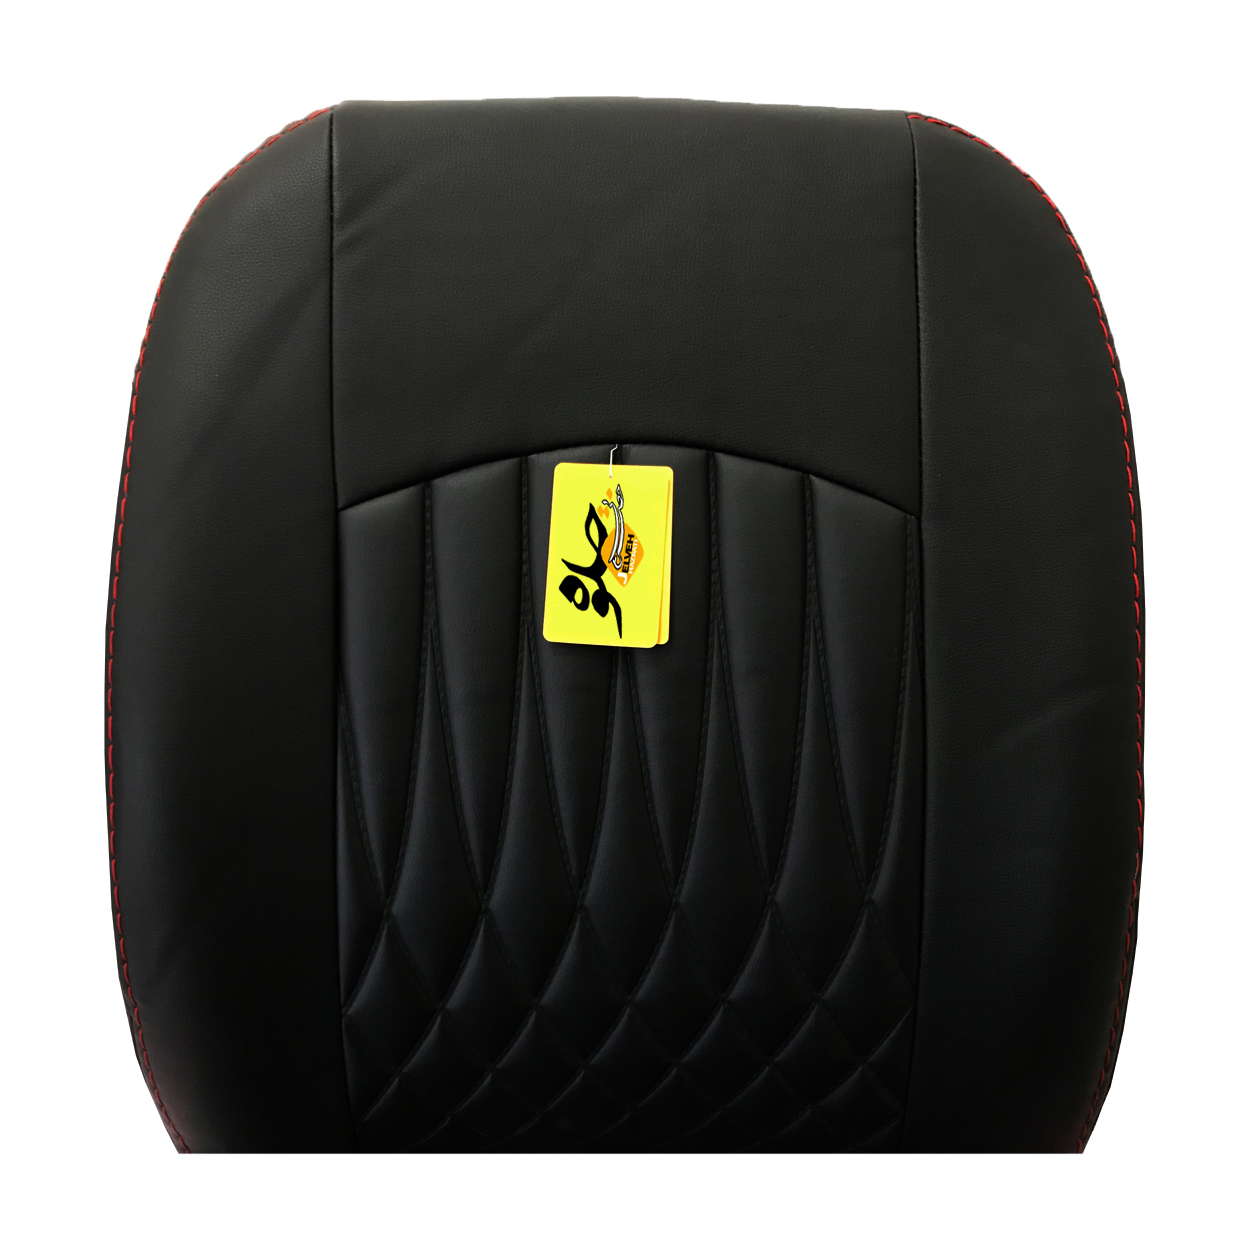 روکش صندلی خودرو جلوه مدل BG12 مناسب برای پژو پارس